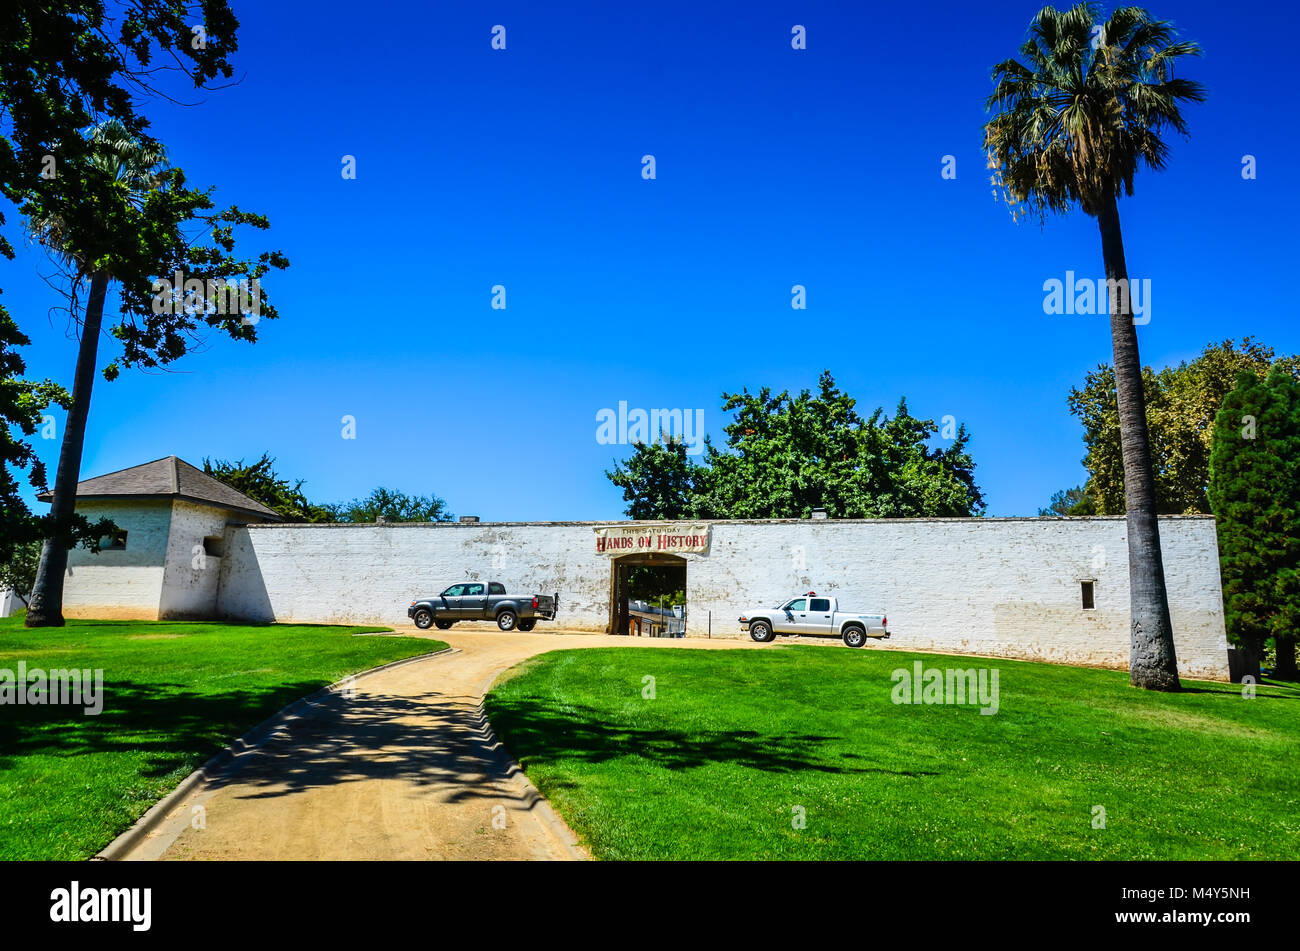 Sutter's Fort, un site historique datant du 19ème siècle et le commerce agricole colonie dans la Haute Californie mexicaine province, près de Sacramento, CA. Banque D'Images